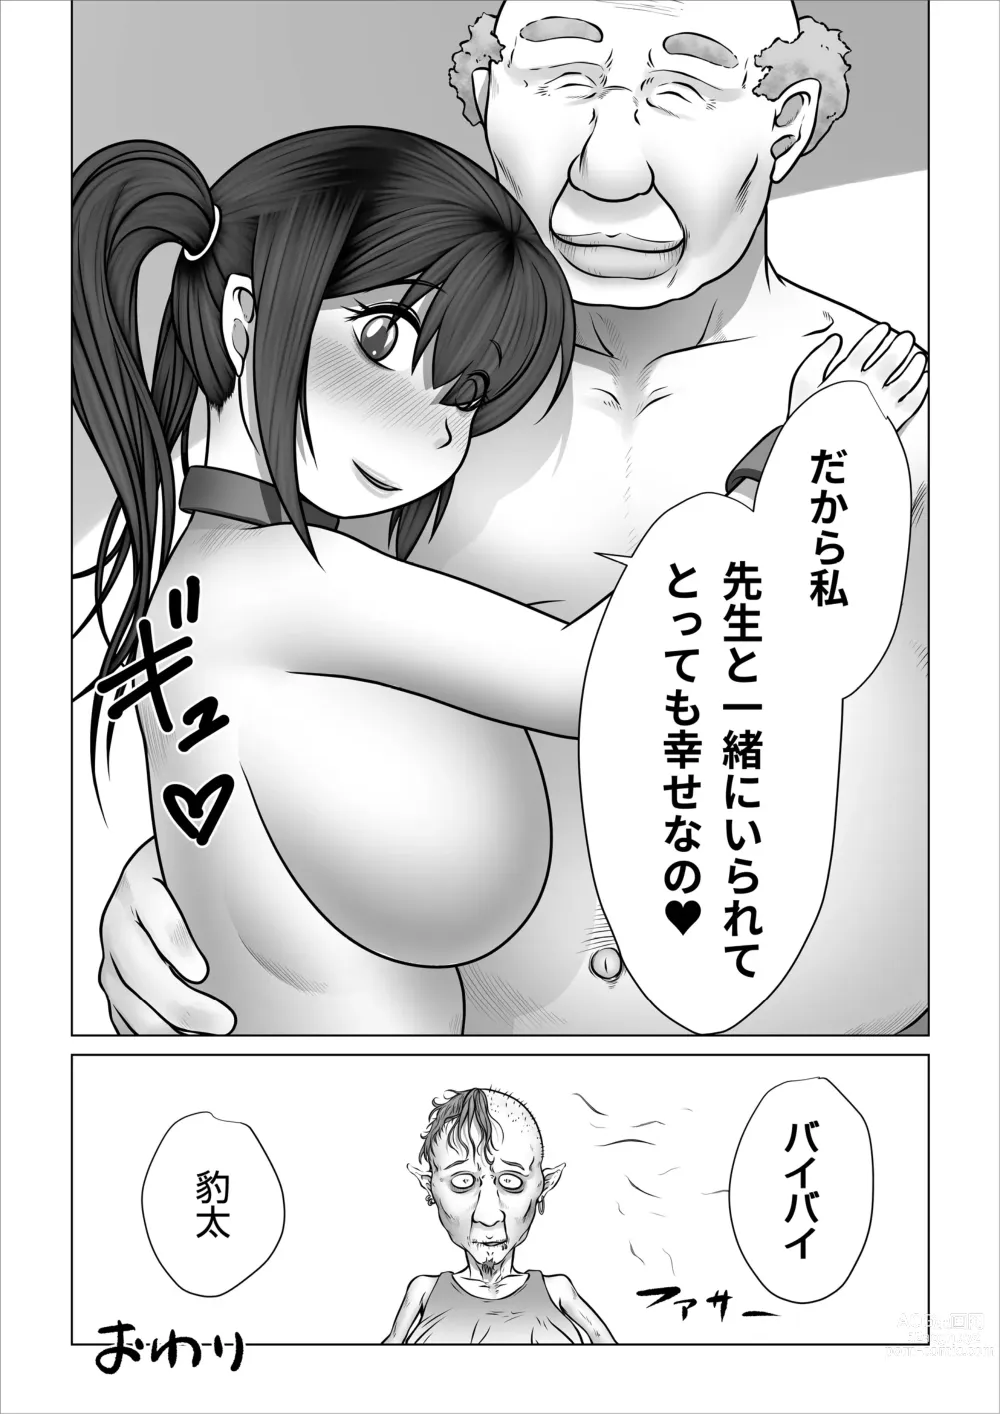 Page 119 of doujinshi Strange School ~Reika Netorare Hen~